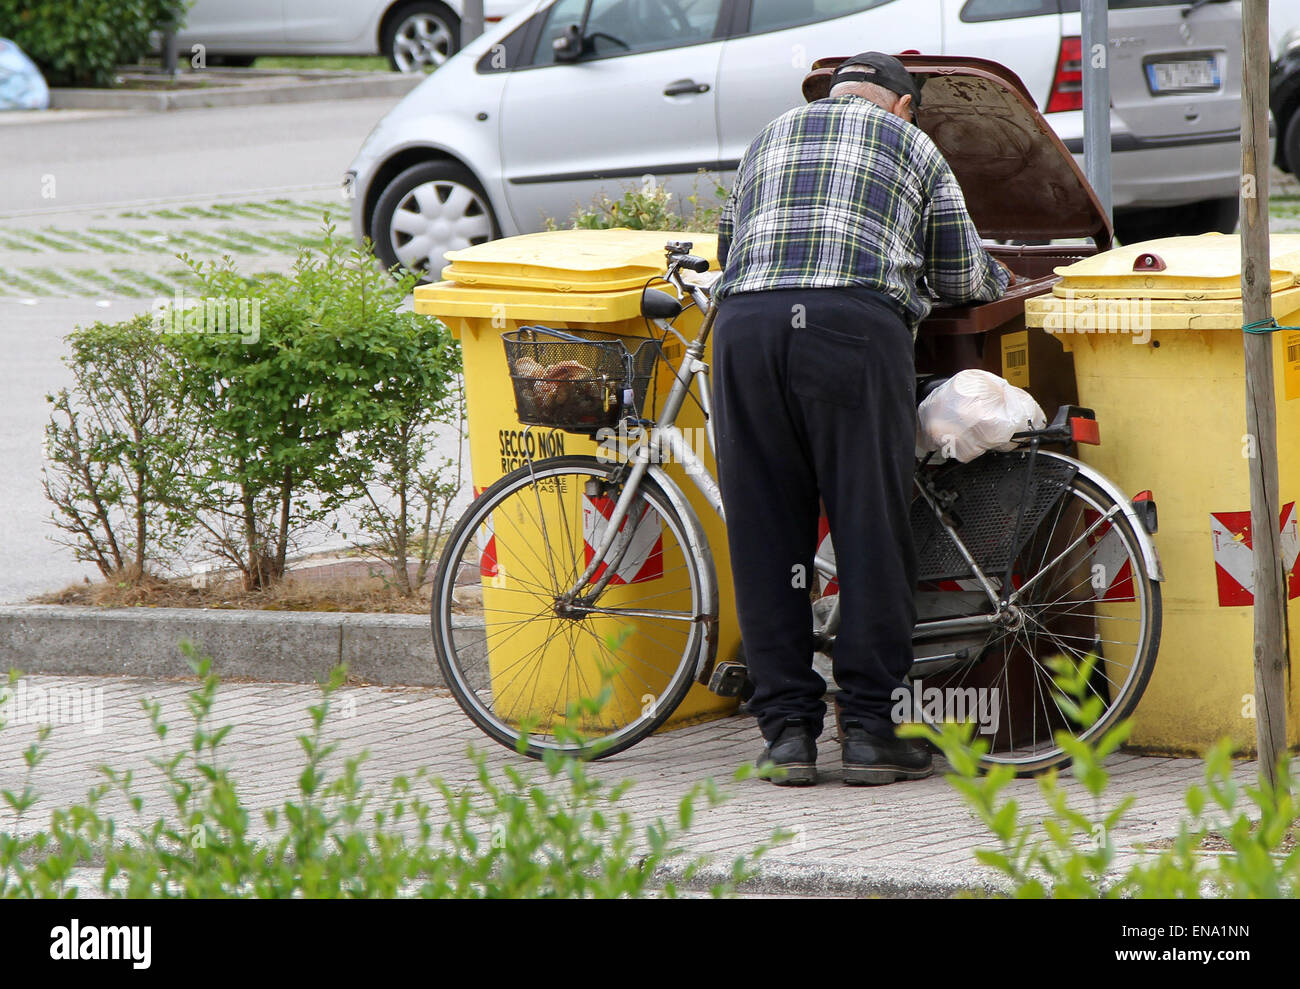 L'Italia, Pordenone: un vecchio uomo cerca nella spazzatura per andare a mangiare qualcosa, mentre a Milano è iniziato Expo 2015 Foto Stock